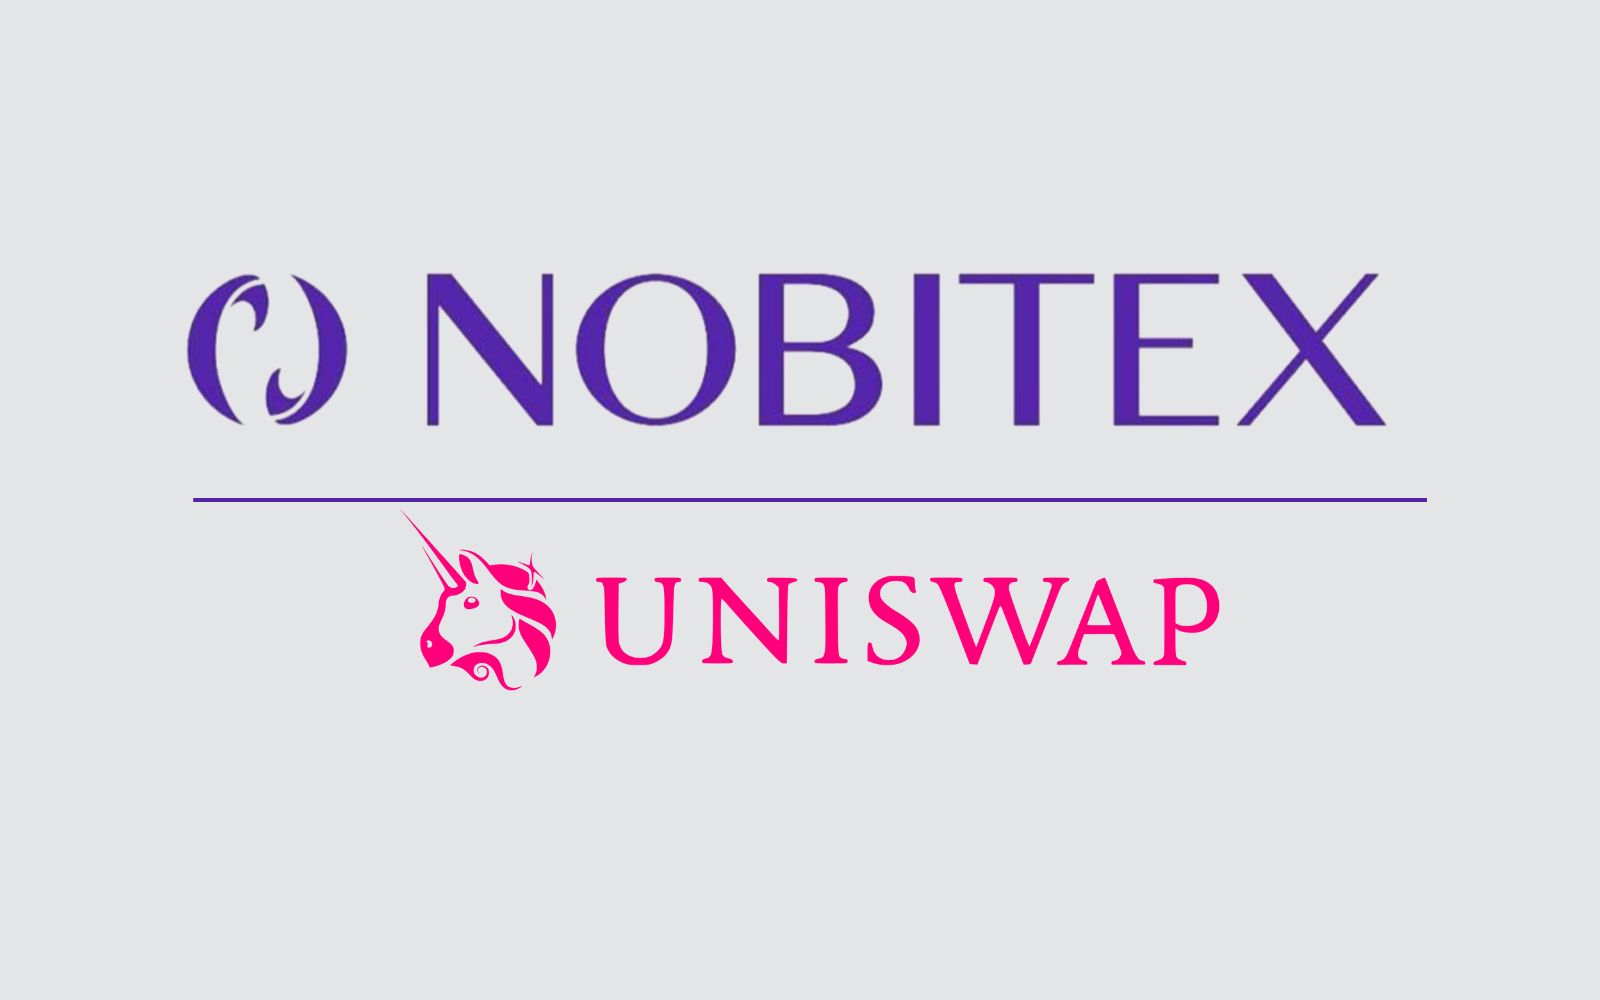 امکان خرید UNI در نوبیتکس فراهم شد / آشنایی با یونی سواپ و مبادله رمزارز بدون دخالت شخص ثالث